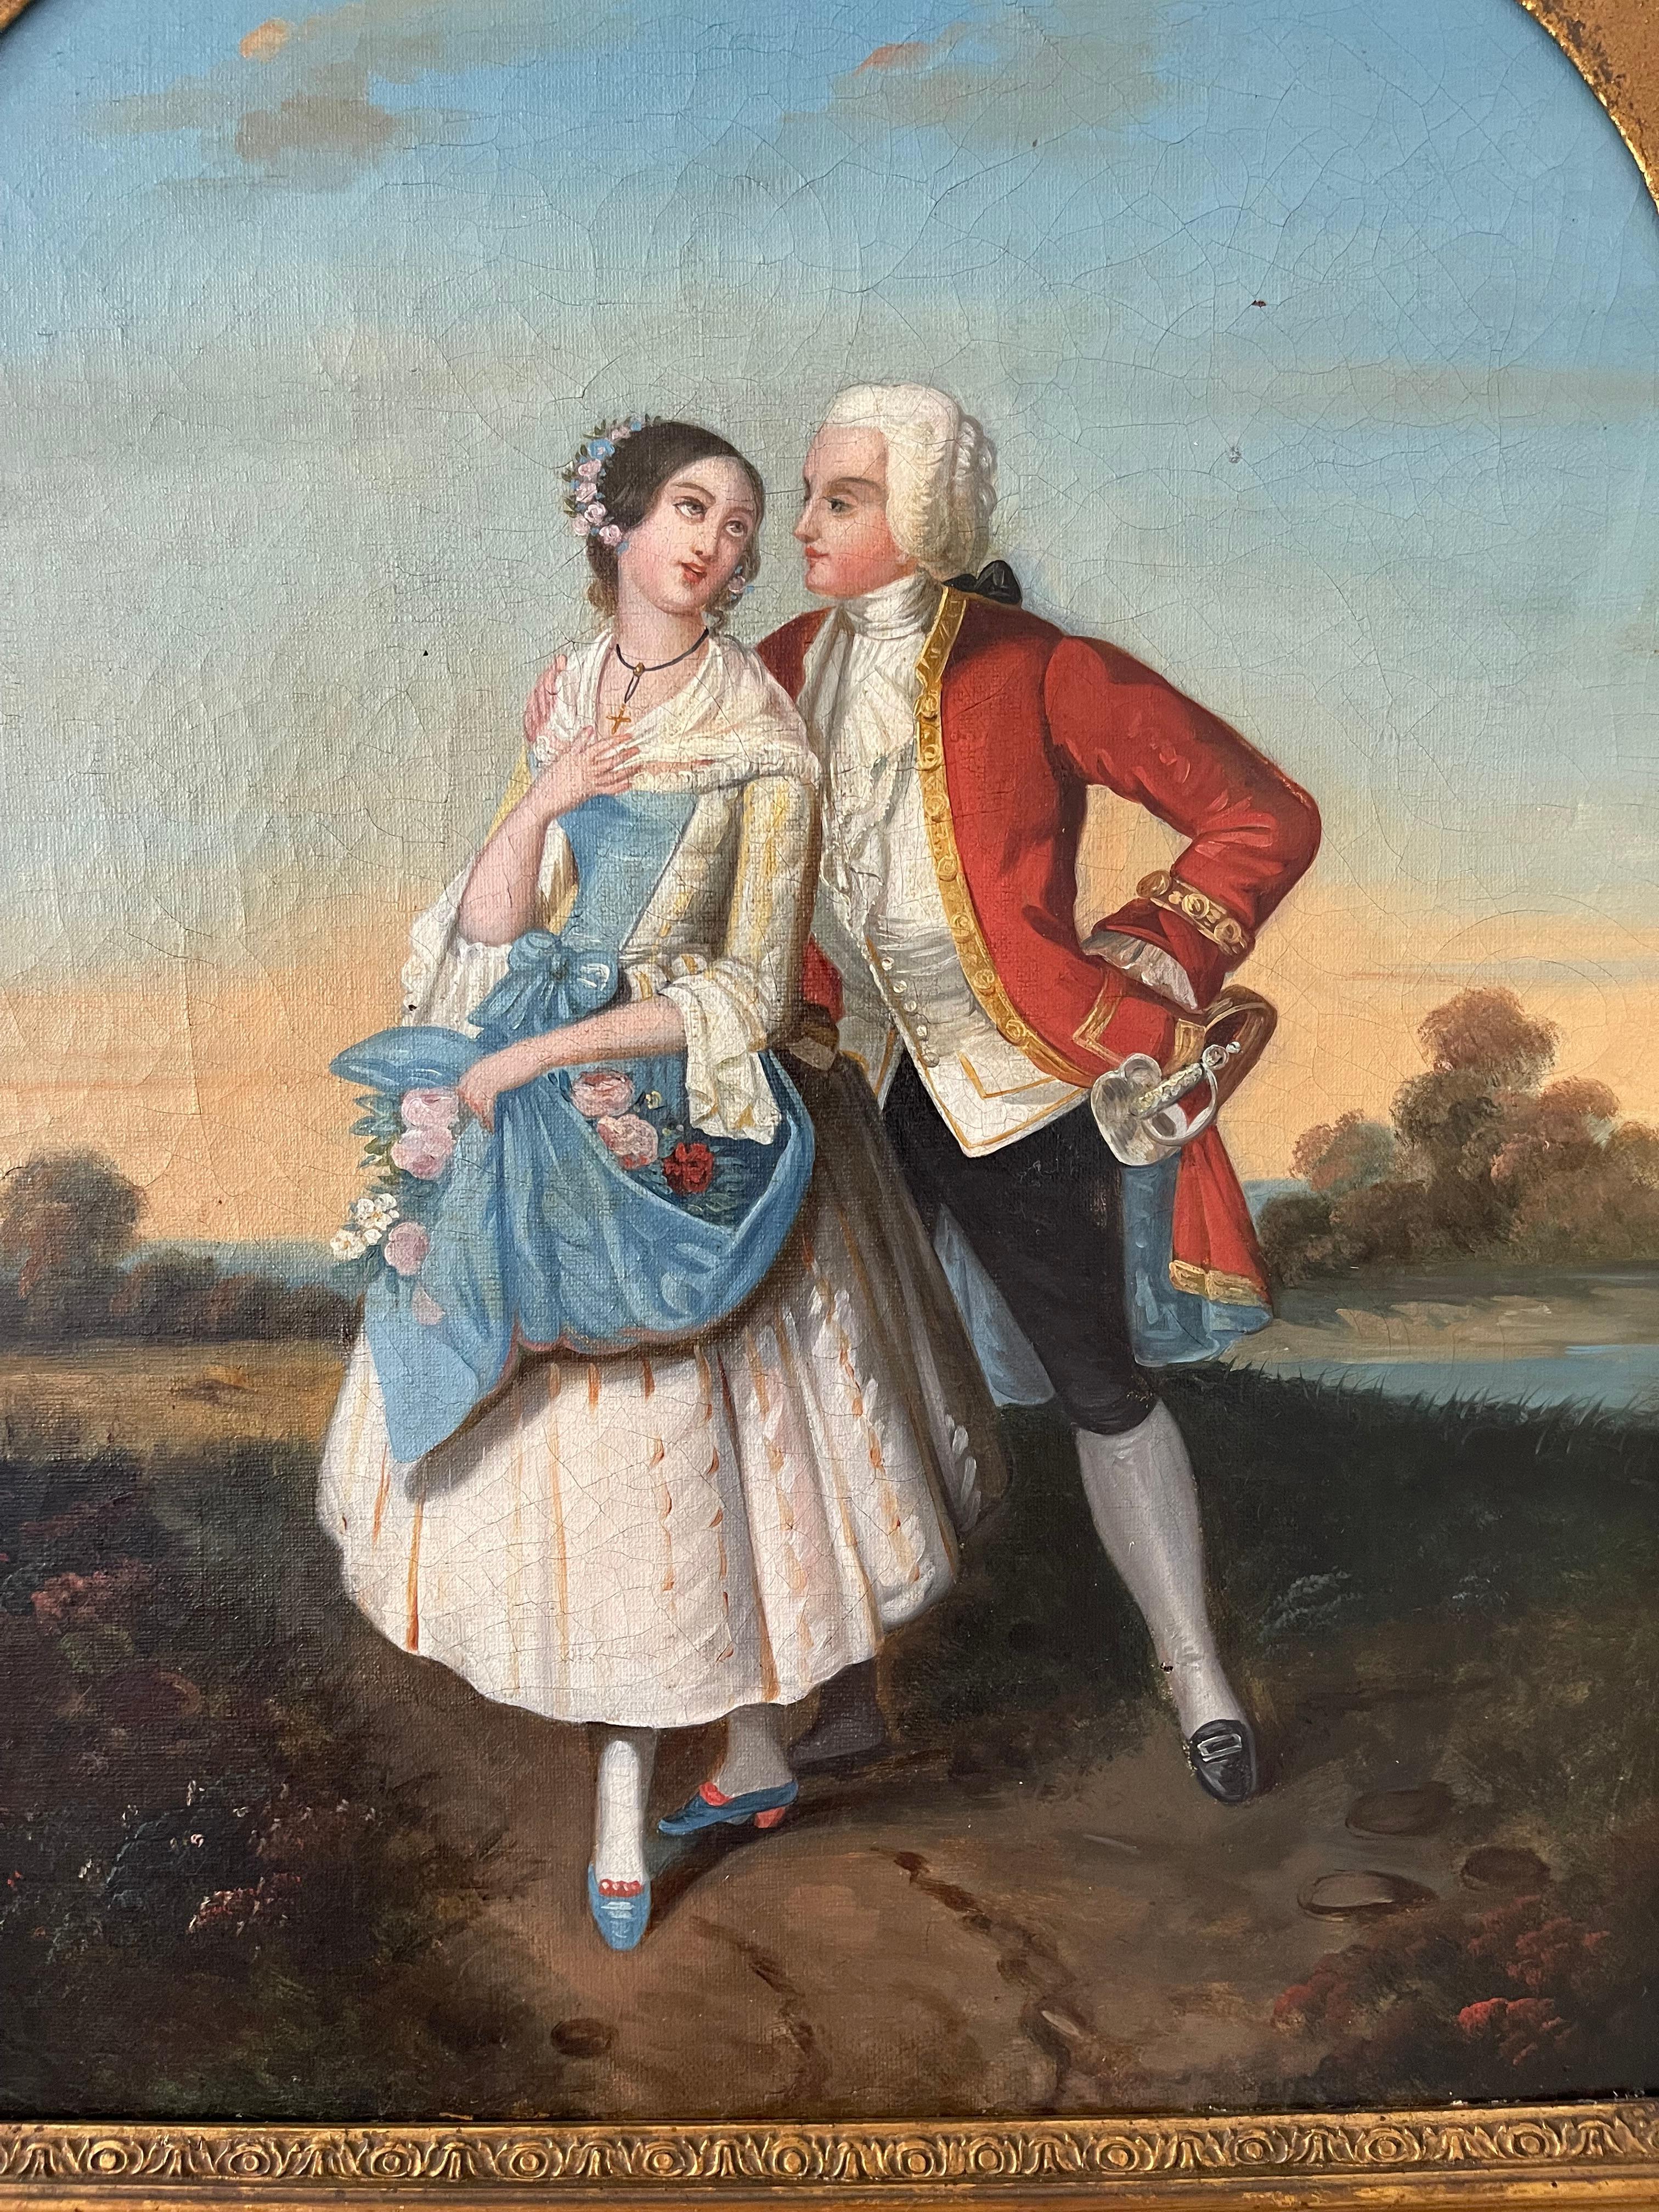 18th century romanticism